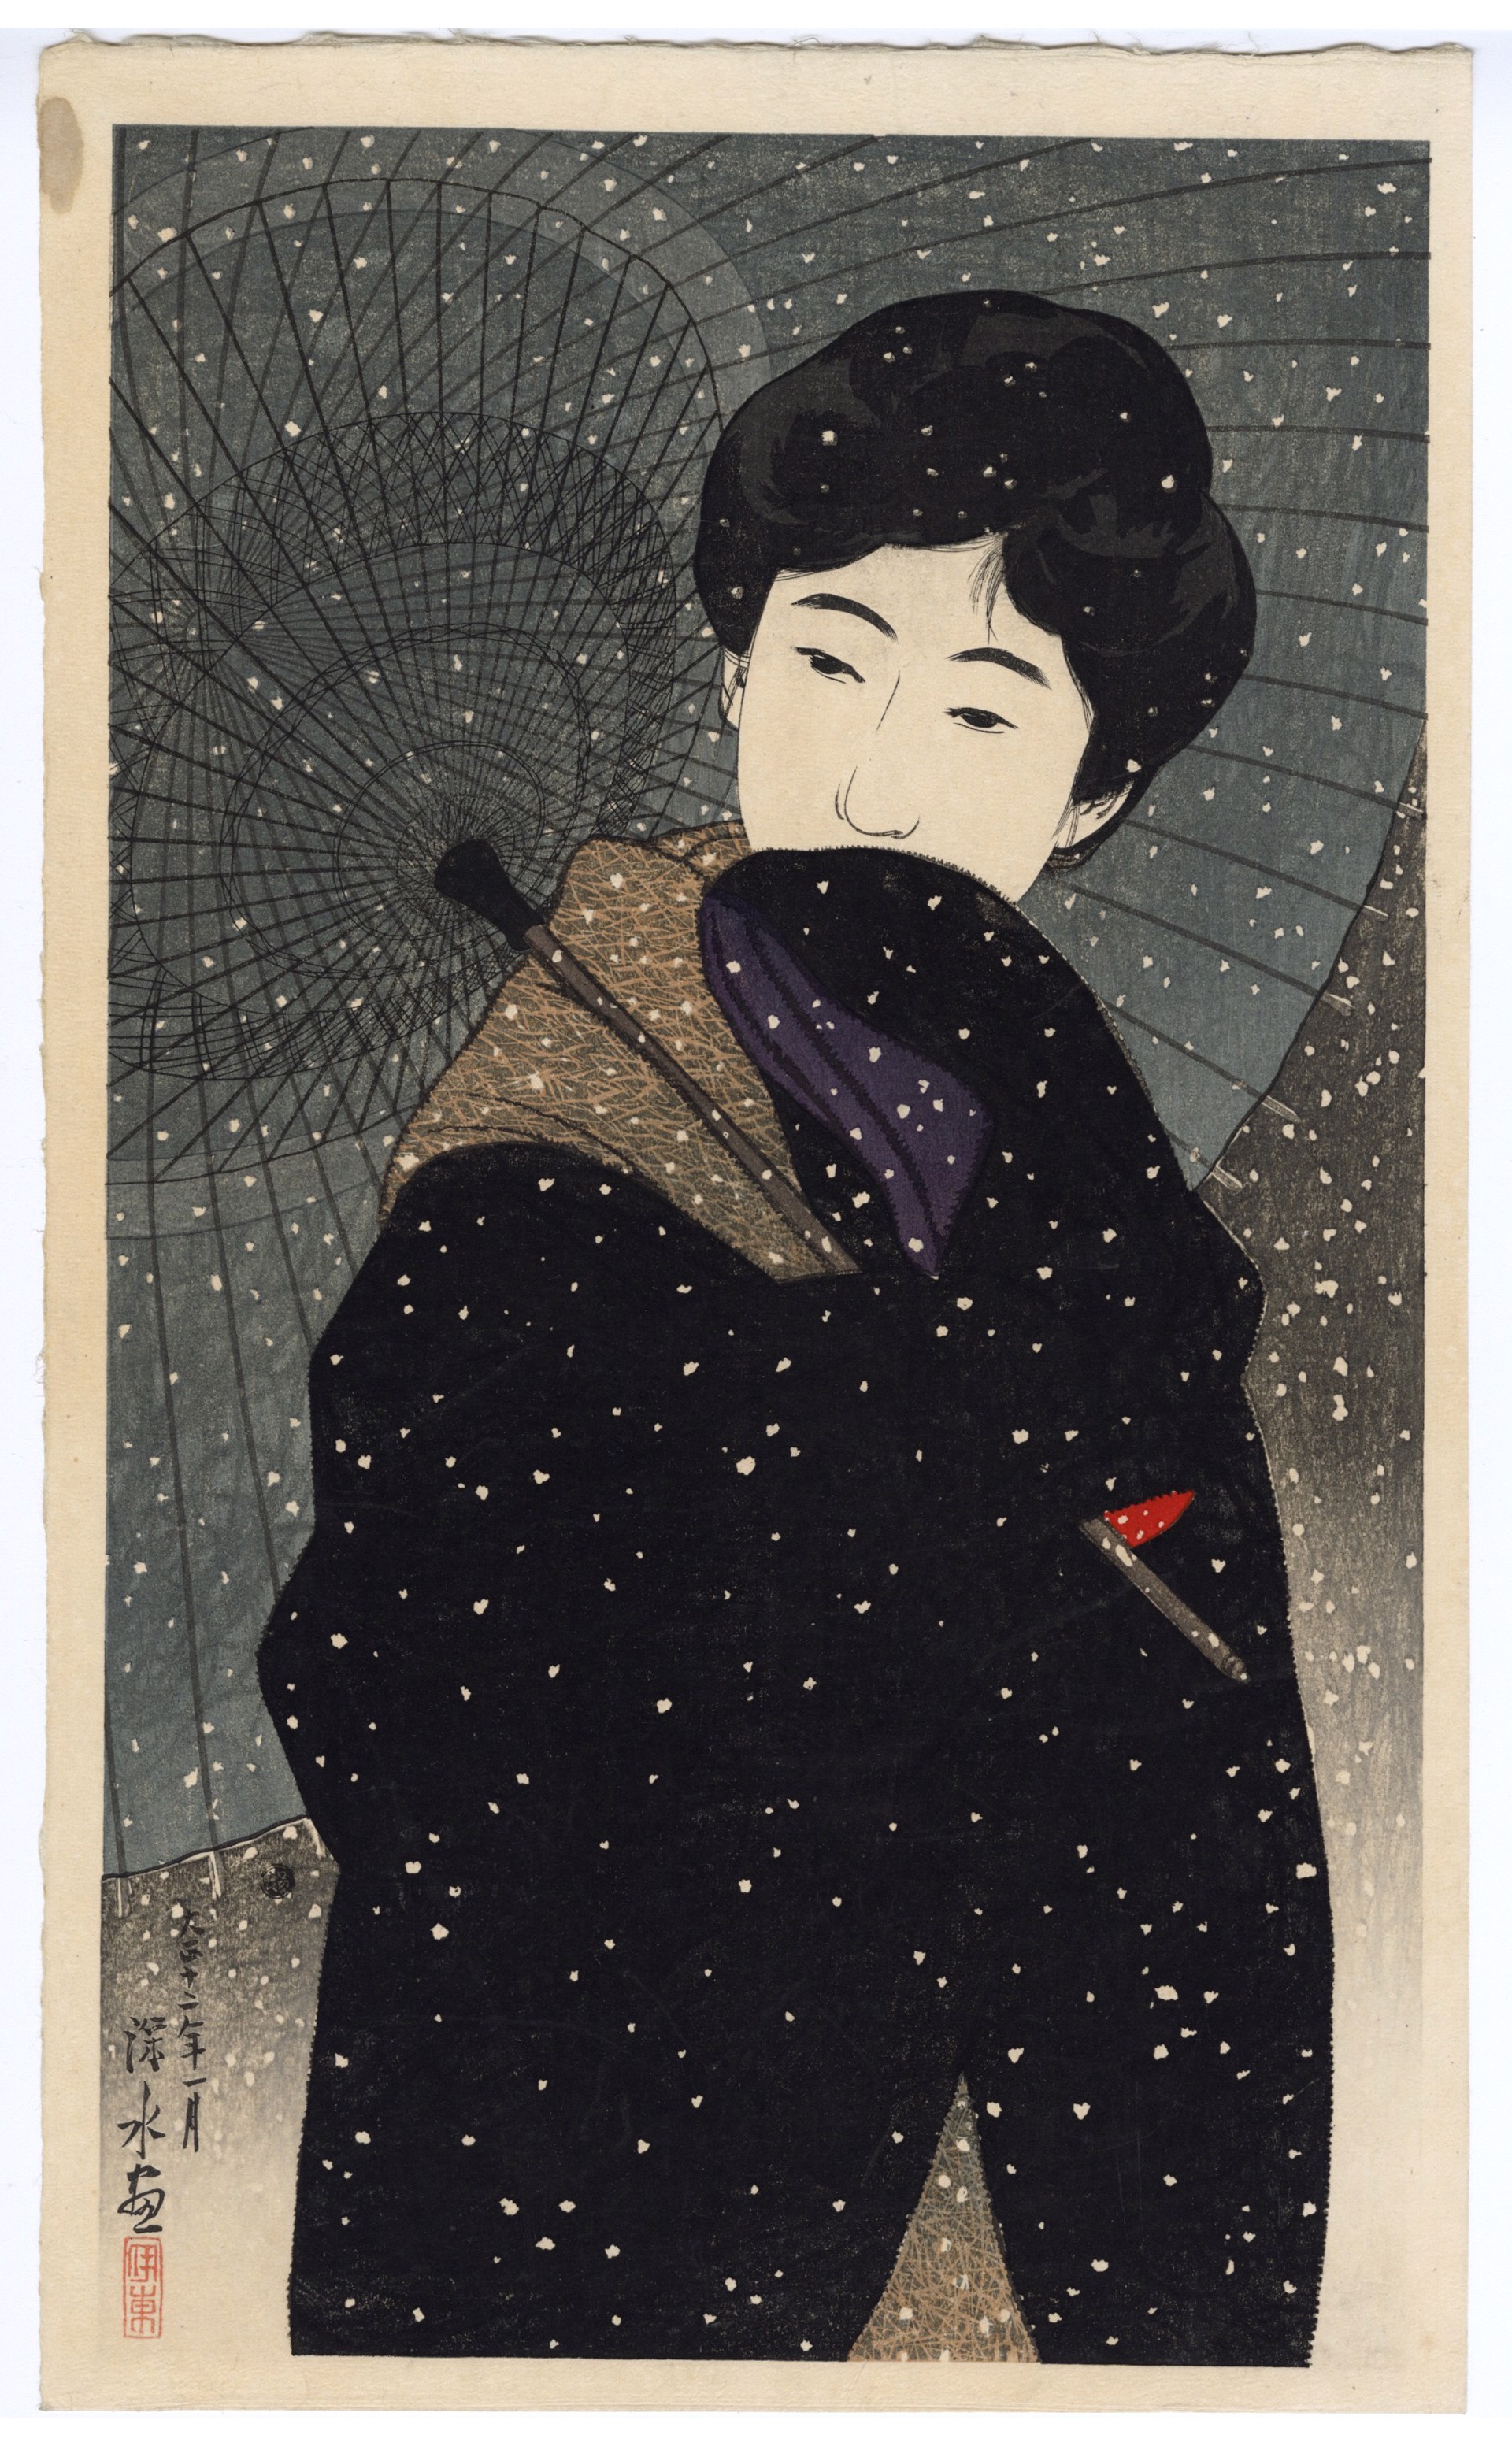 Snowy Night by Shinsui